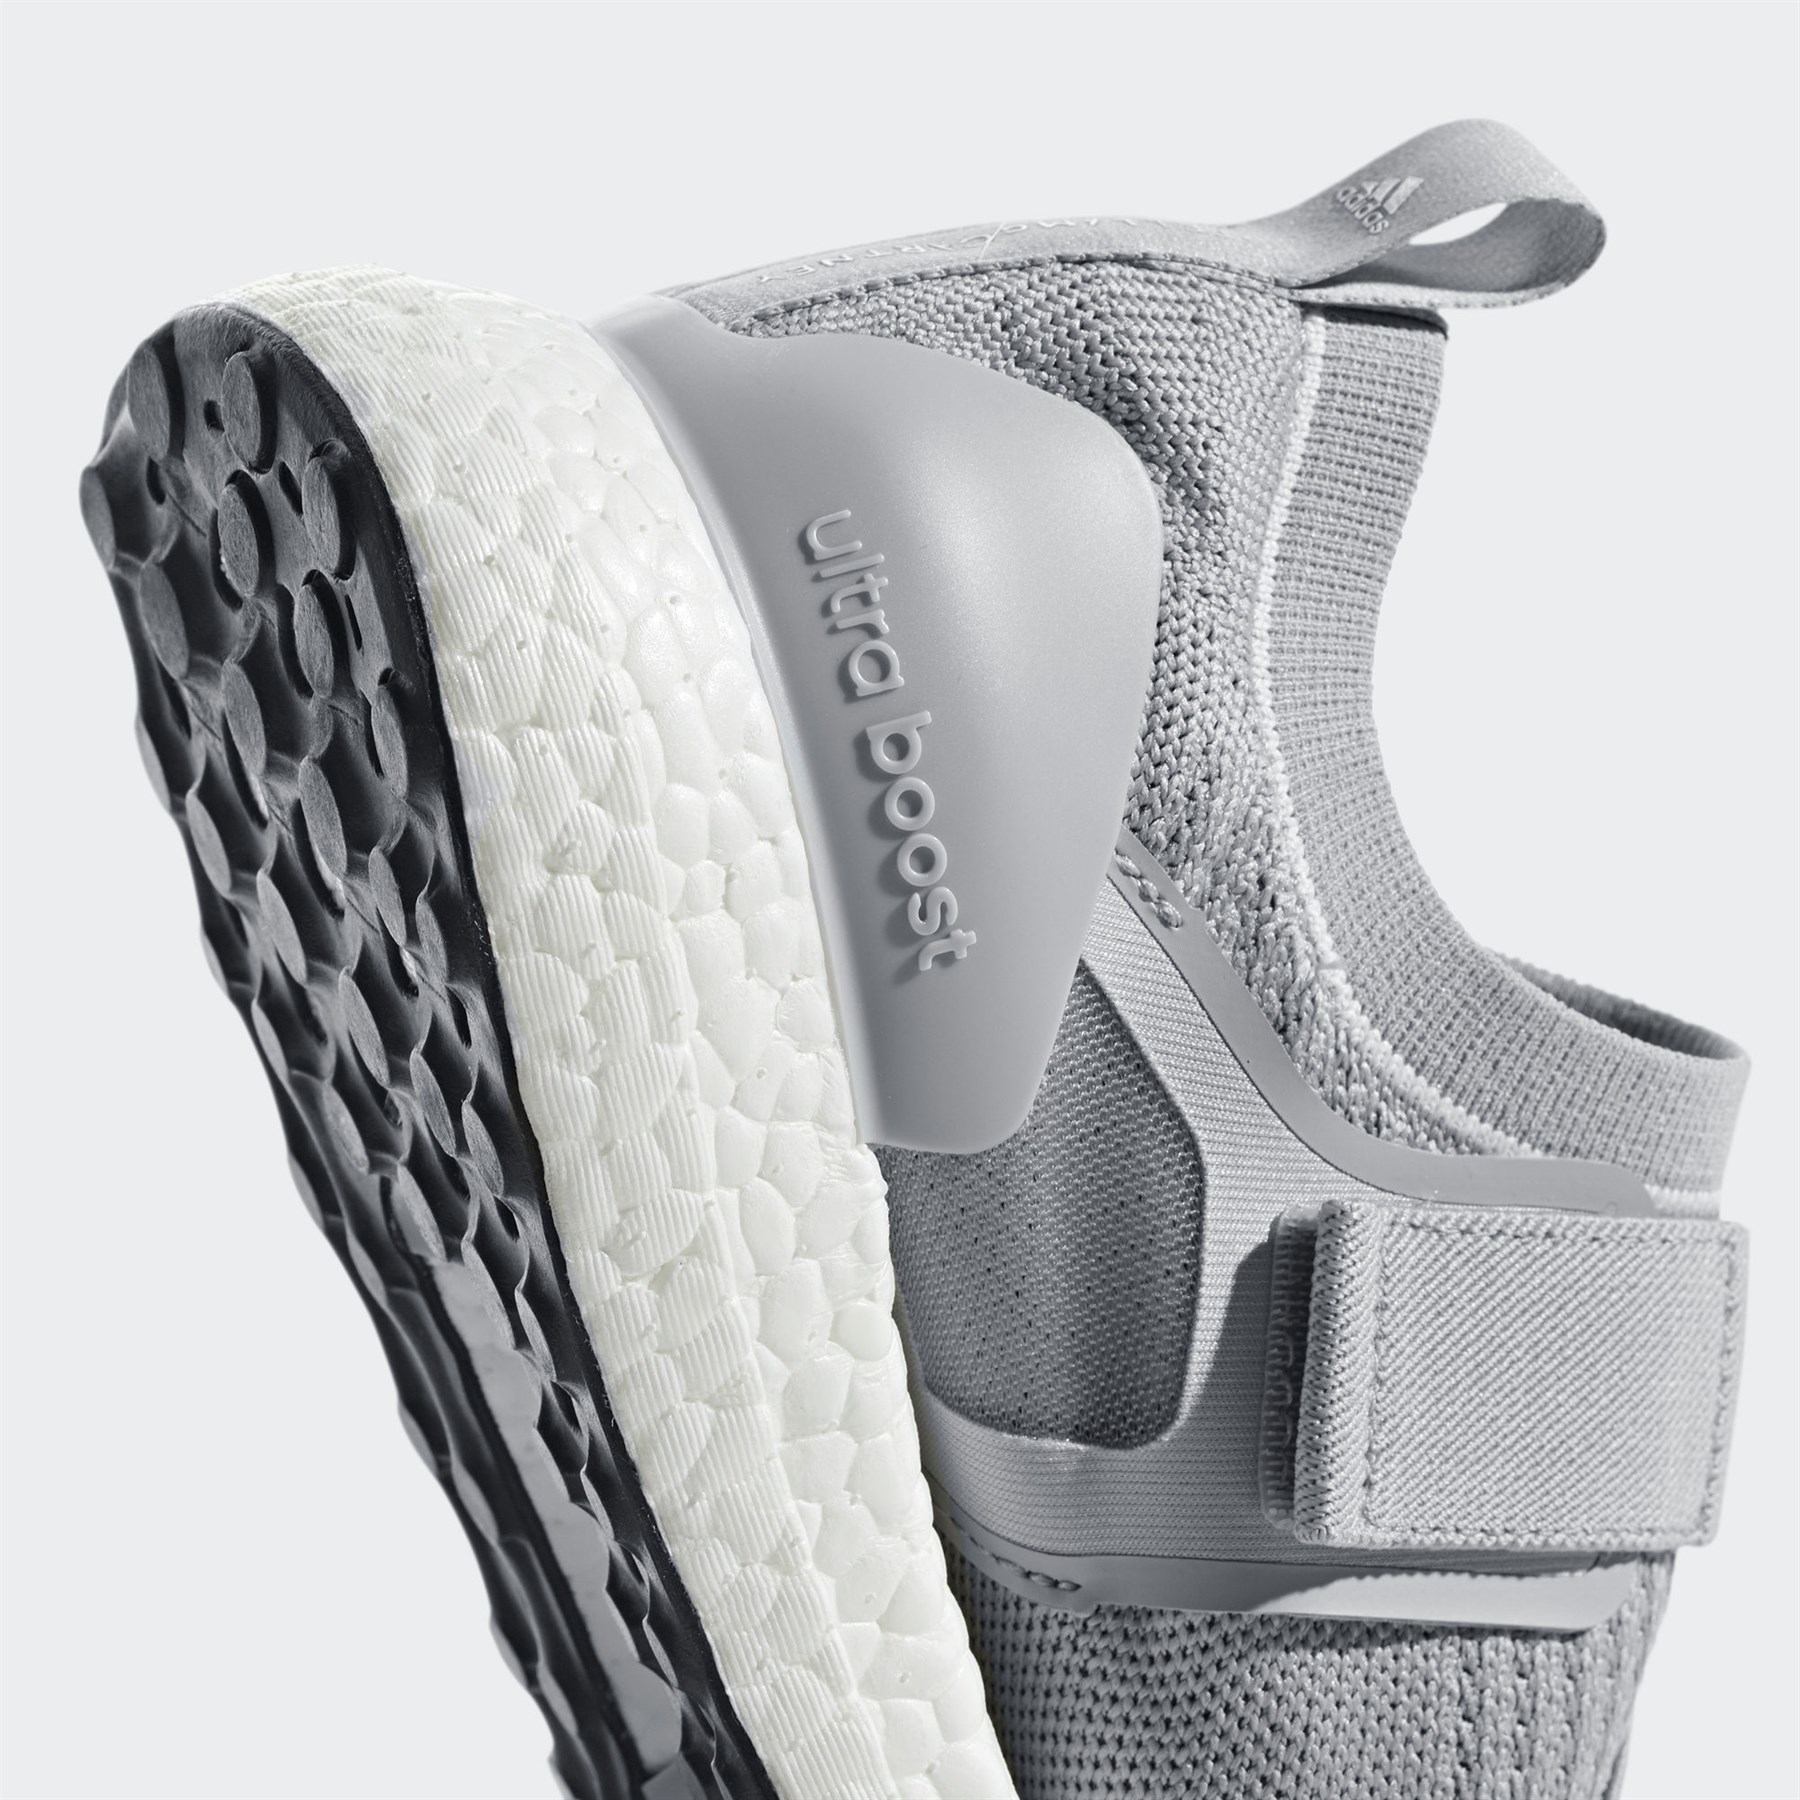 Adidas Kadın Koşu - Yürüyüş Ayakkabısı Ac7551 Ultraboost X S.